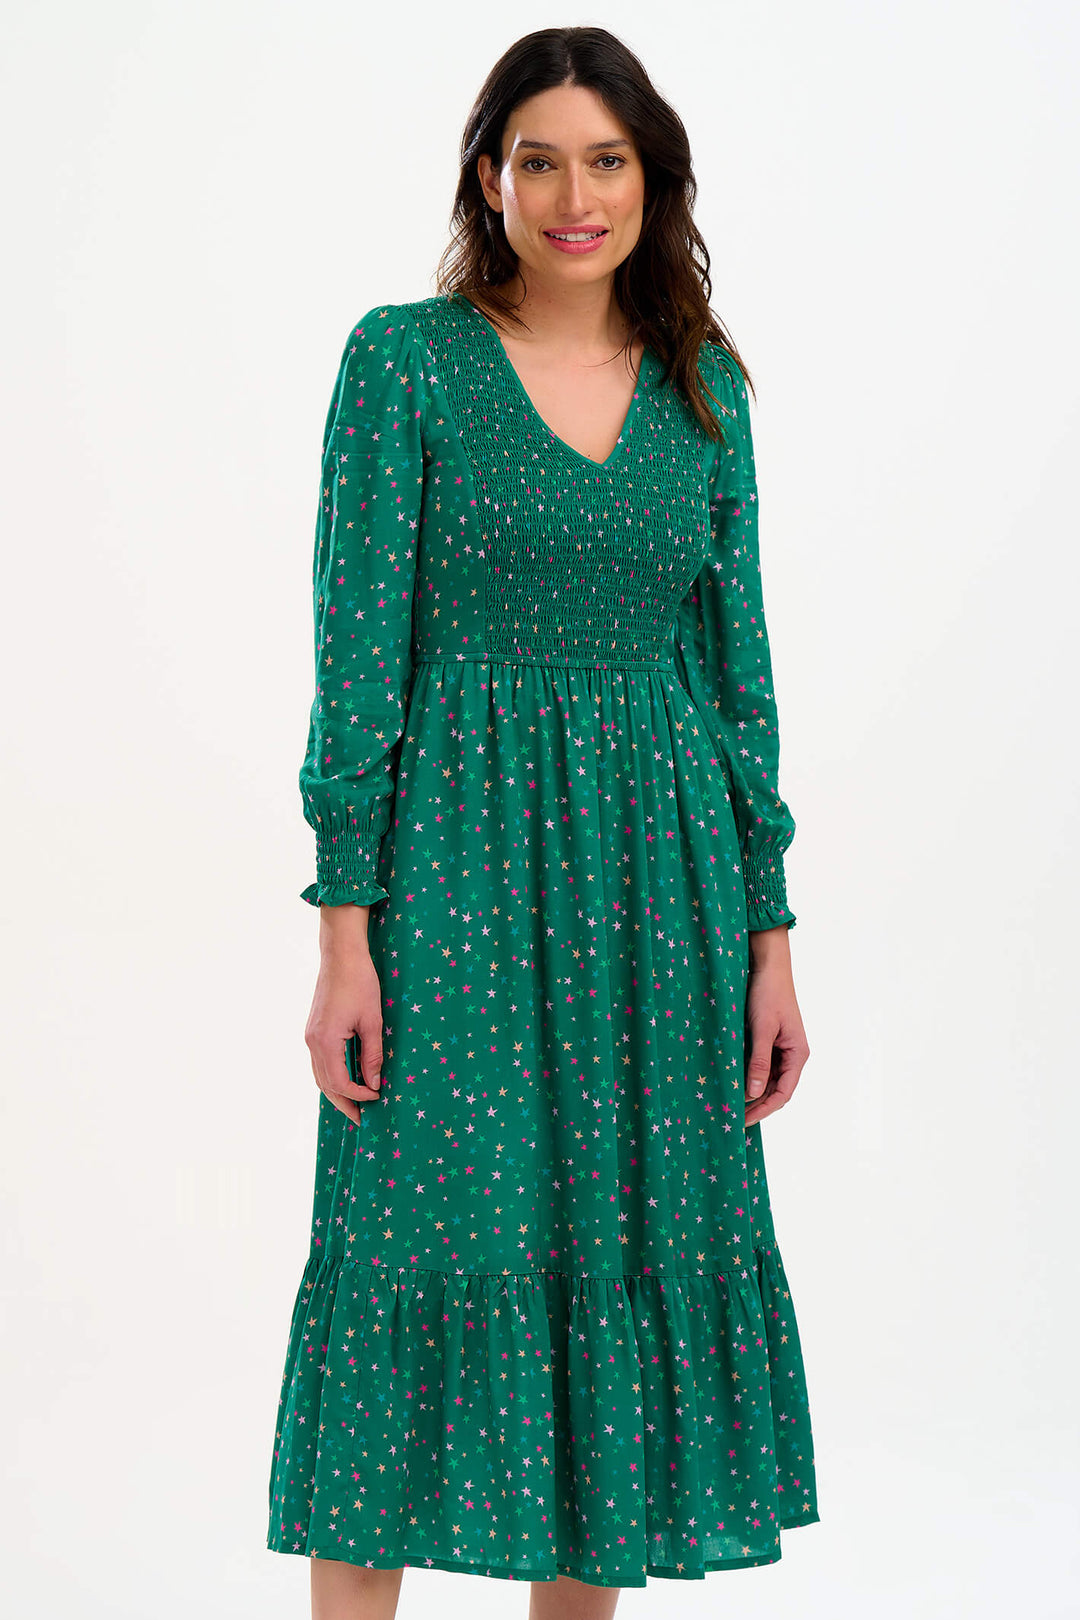 Sugarhill Brighton D0971 Green Micro Star Confetti Shirred Midi Dress - Experience Boutique